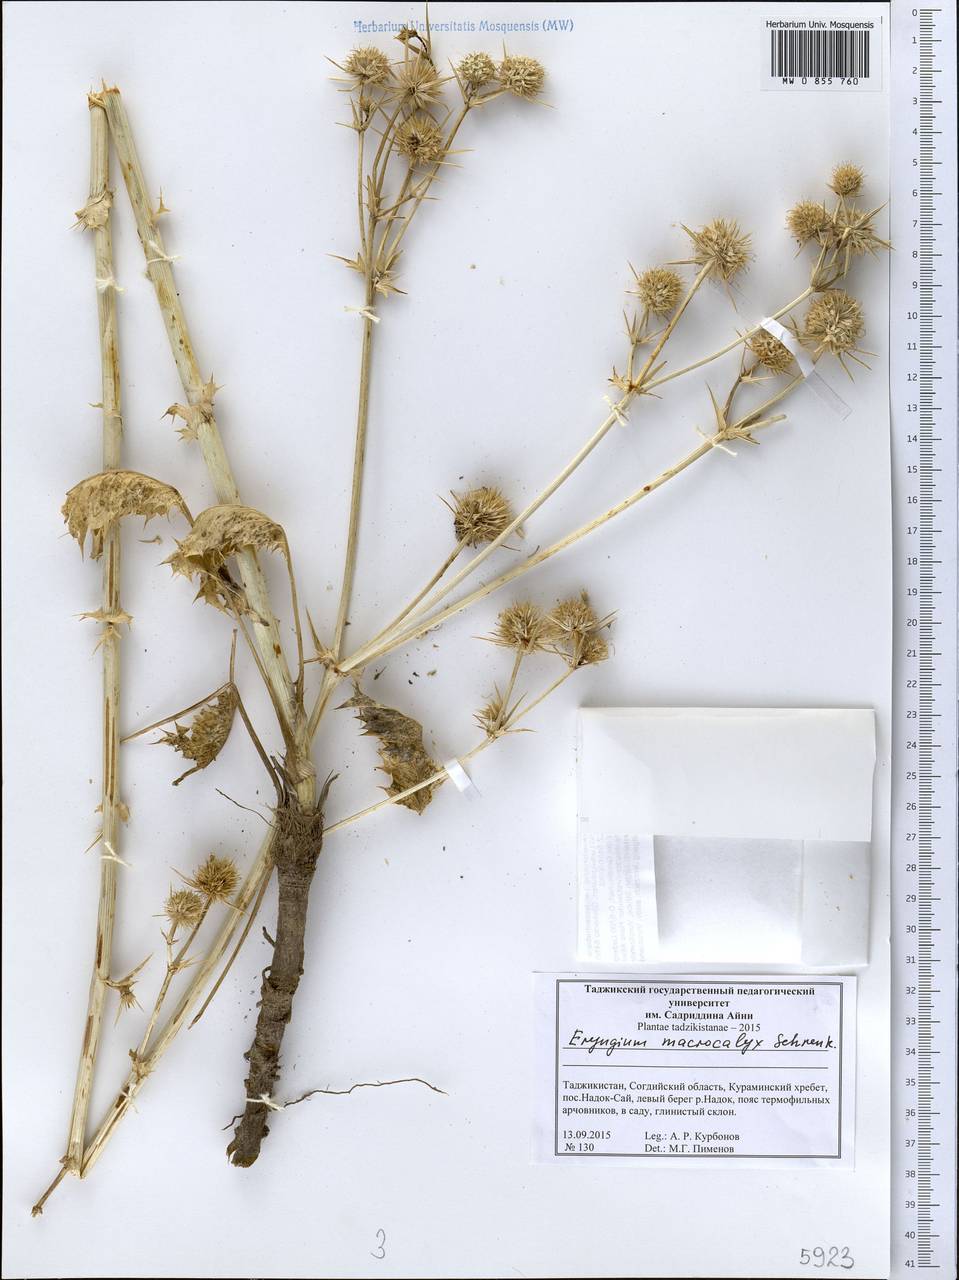 Eryngium macrocalyx Schrenk, Middle Asia, Western Tian Shan & Karatau (M3) (Tajikistan)